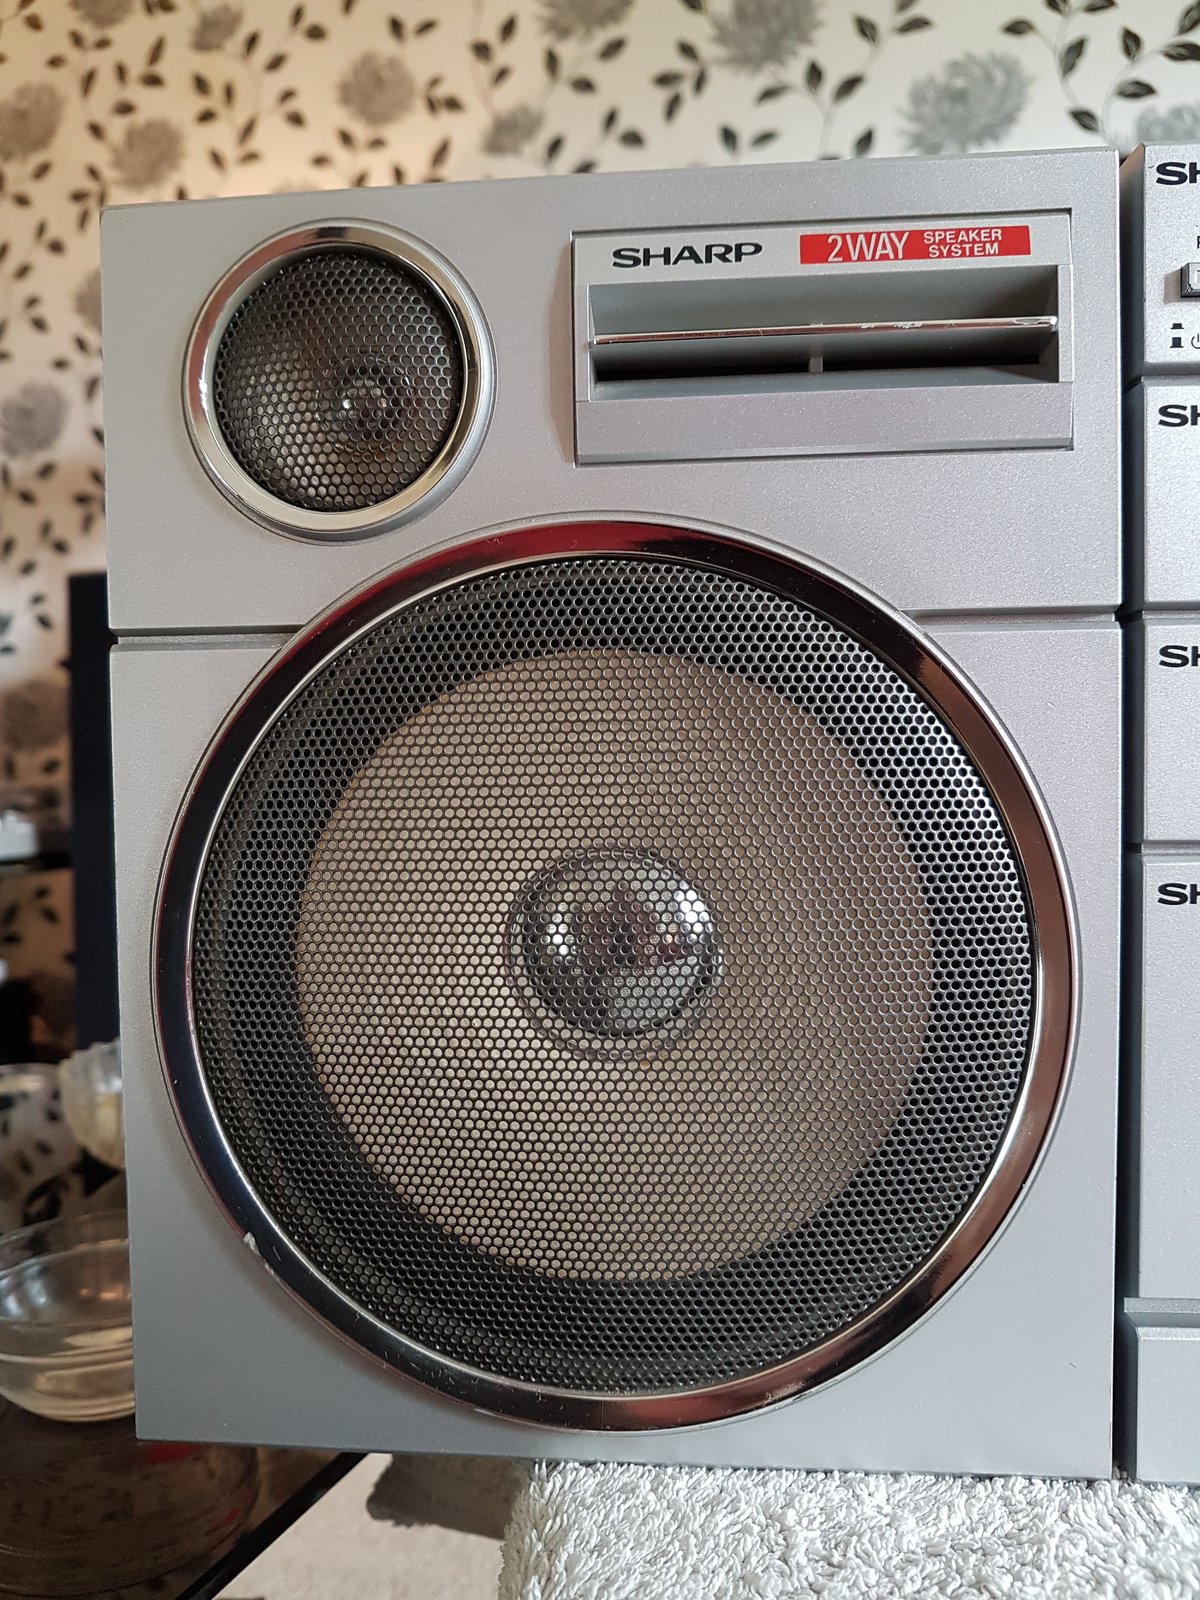 Sharp GX-250 Stereo Radio Recorder - June 2017 (11).jpg